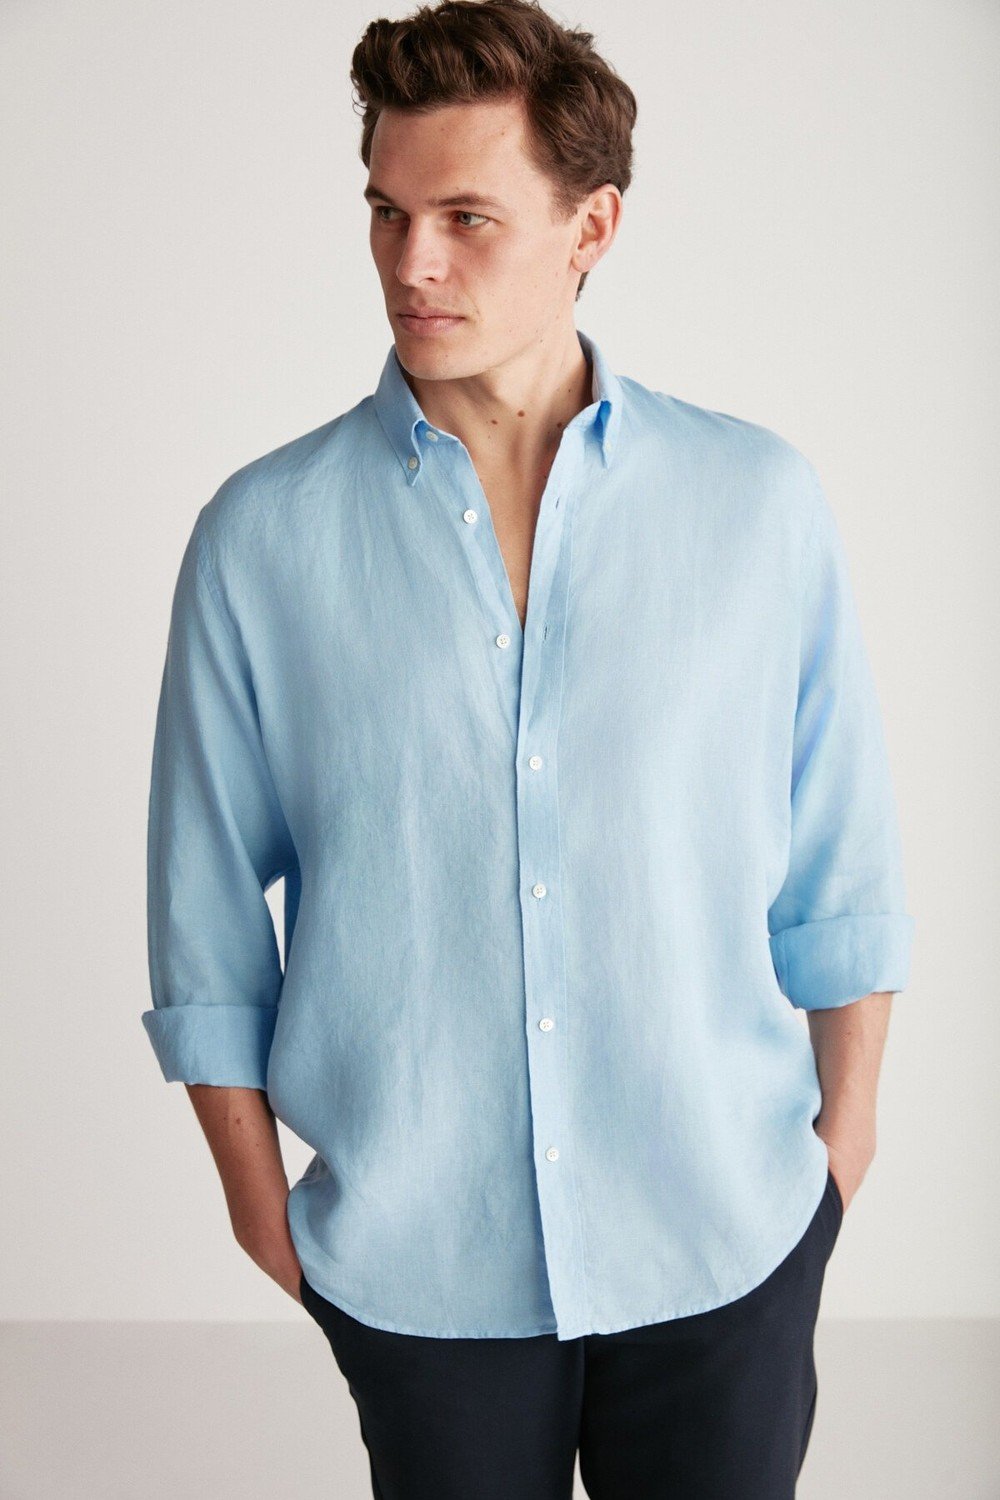 GRIMELANGE Shirt - Dark blue - Regular fit